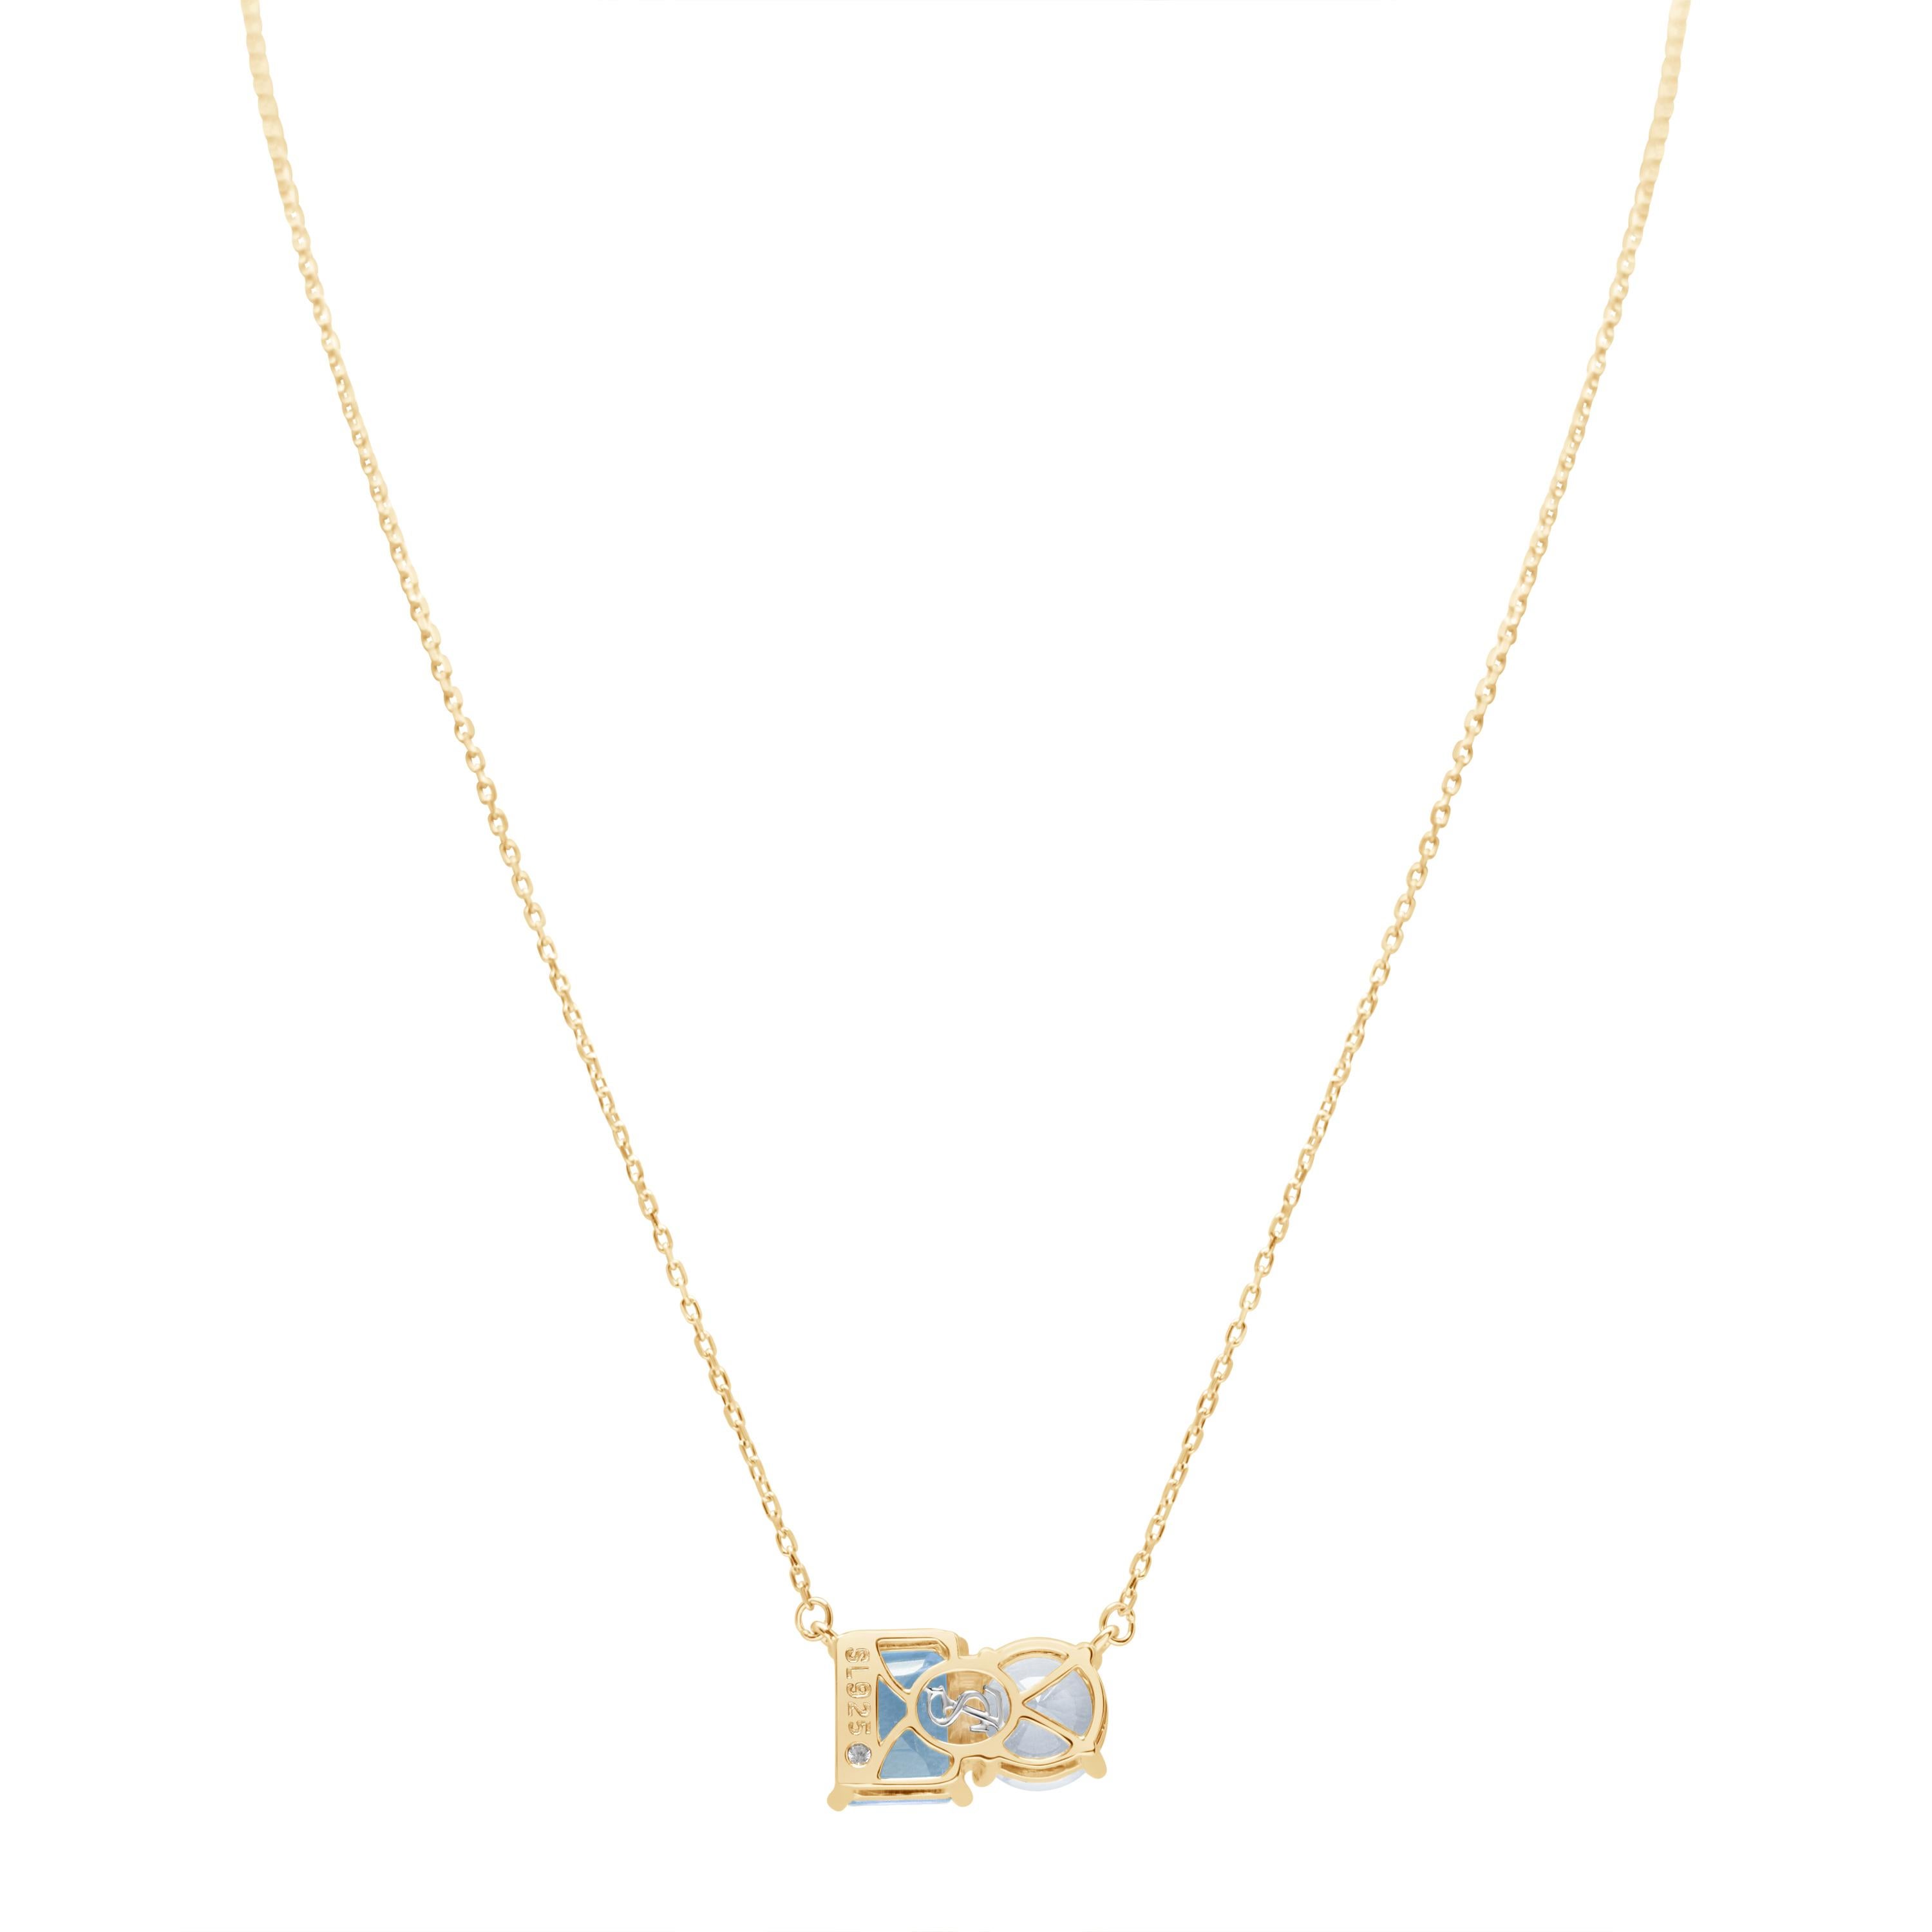 Whiting dans des tons blancs et bleus, ce collier Suzy Levian est tout à fait dans la tendance et présente une topaze blanche de taille ronde et une topaze bleue de taille émeraude parfaitement assorties. Ce collier symbolise l'association parfaite